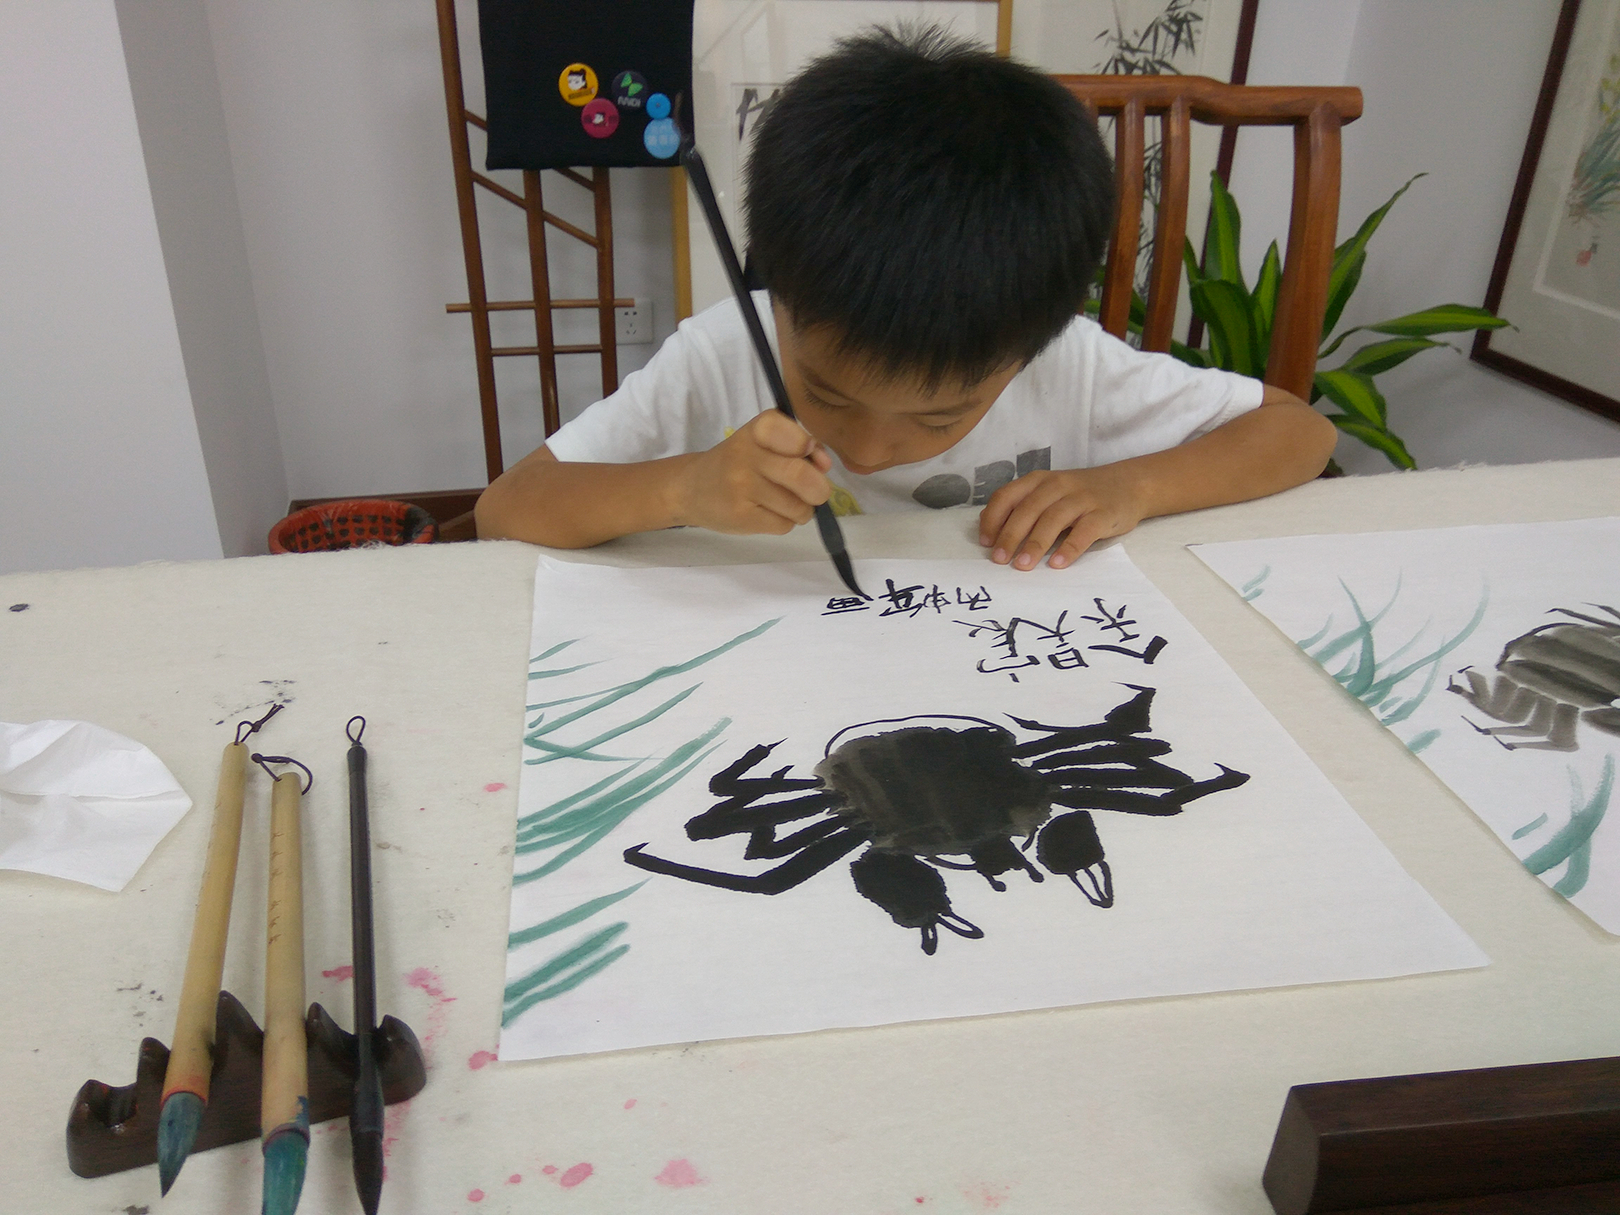 我的学生昊宸的第一次国画课,天赋极高,老师很欣慰啊.